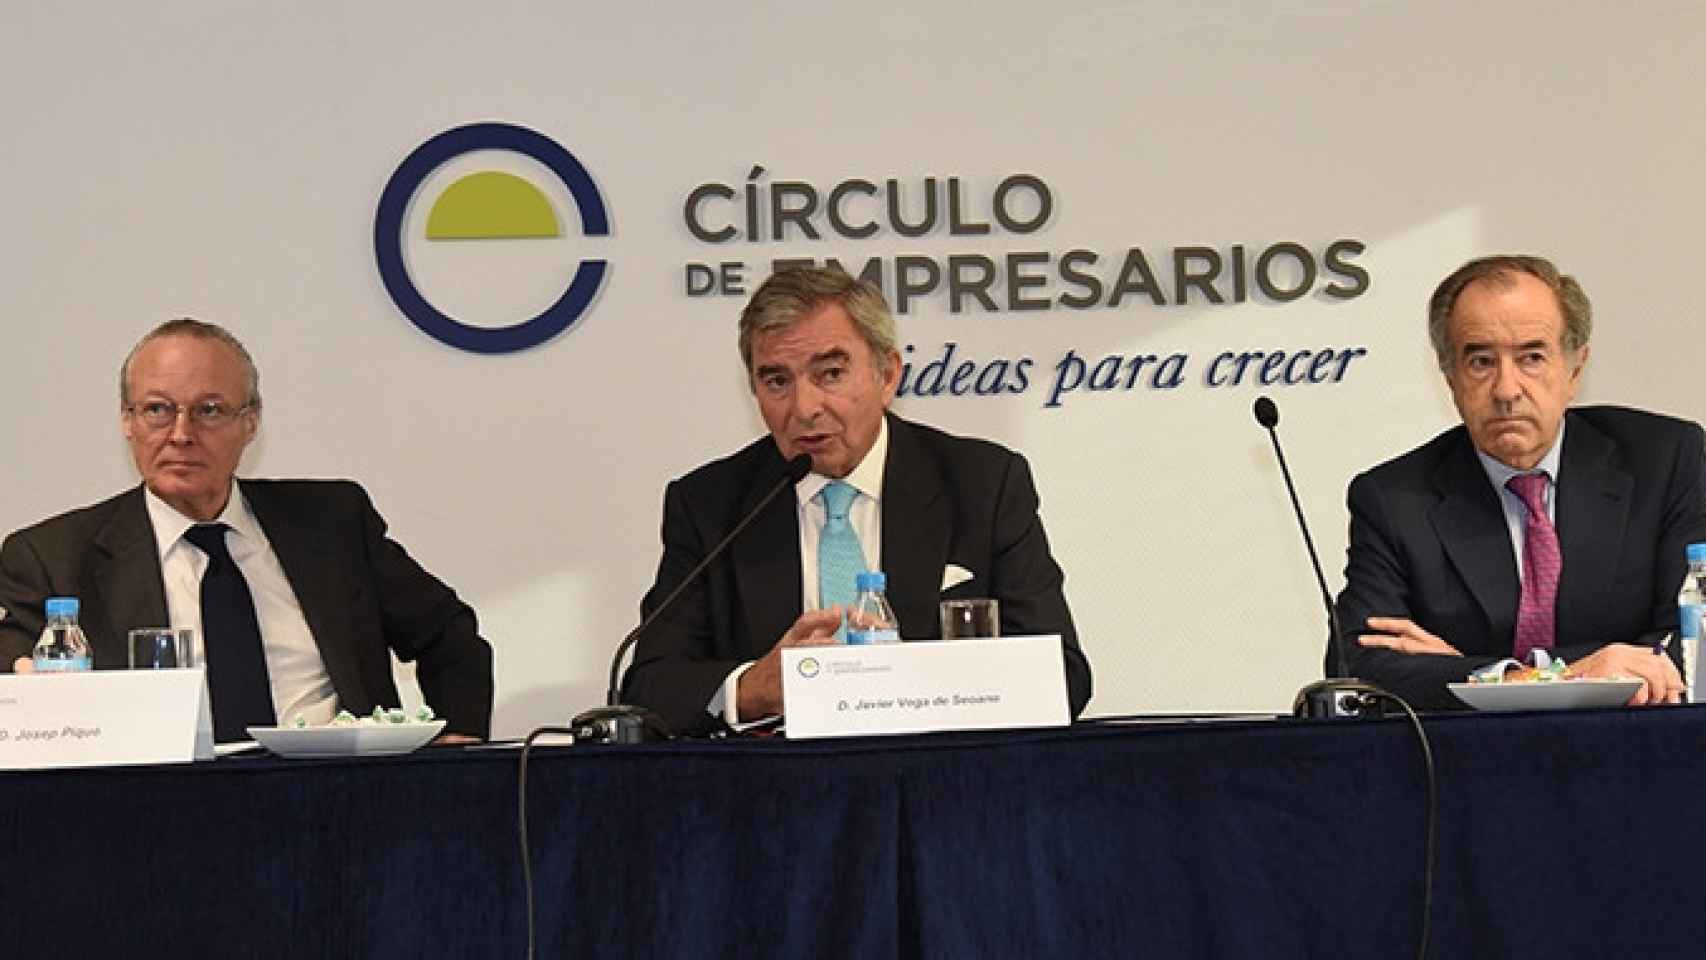 Josep Piqué, Javier Vega de Seoane y Jesús Sainz (de izquierda a derecha), máximos representantes del Círculo de Empresarios / CG